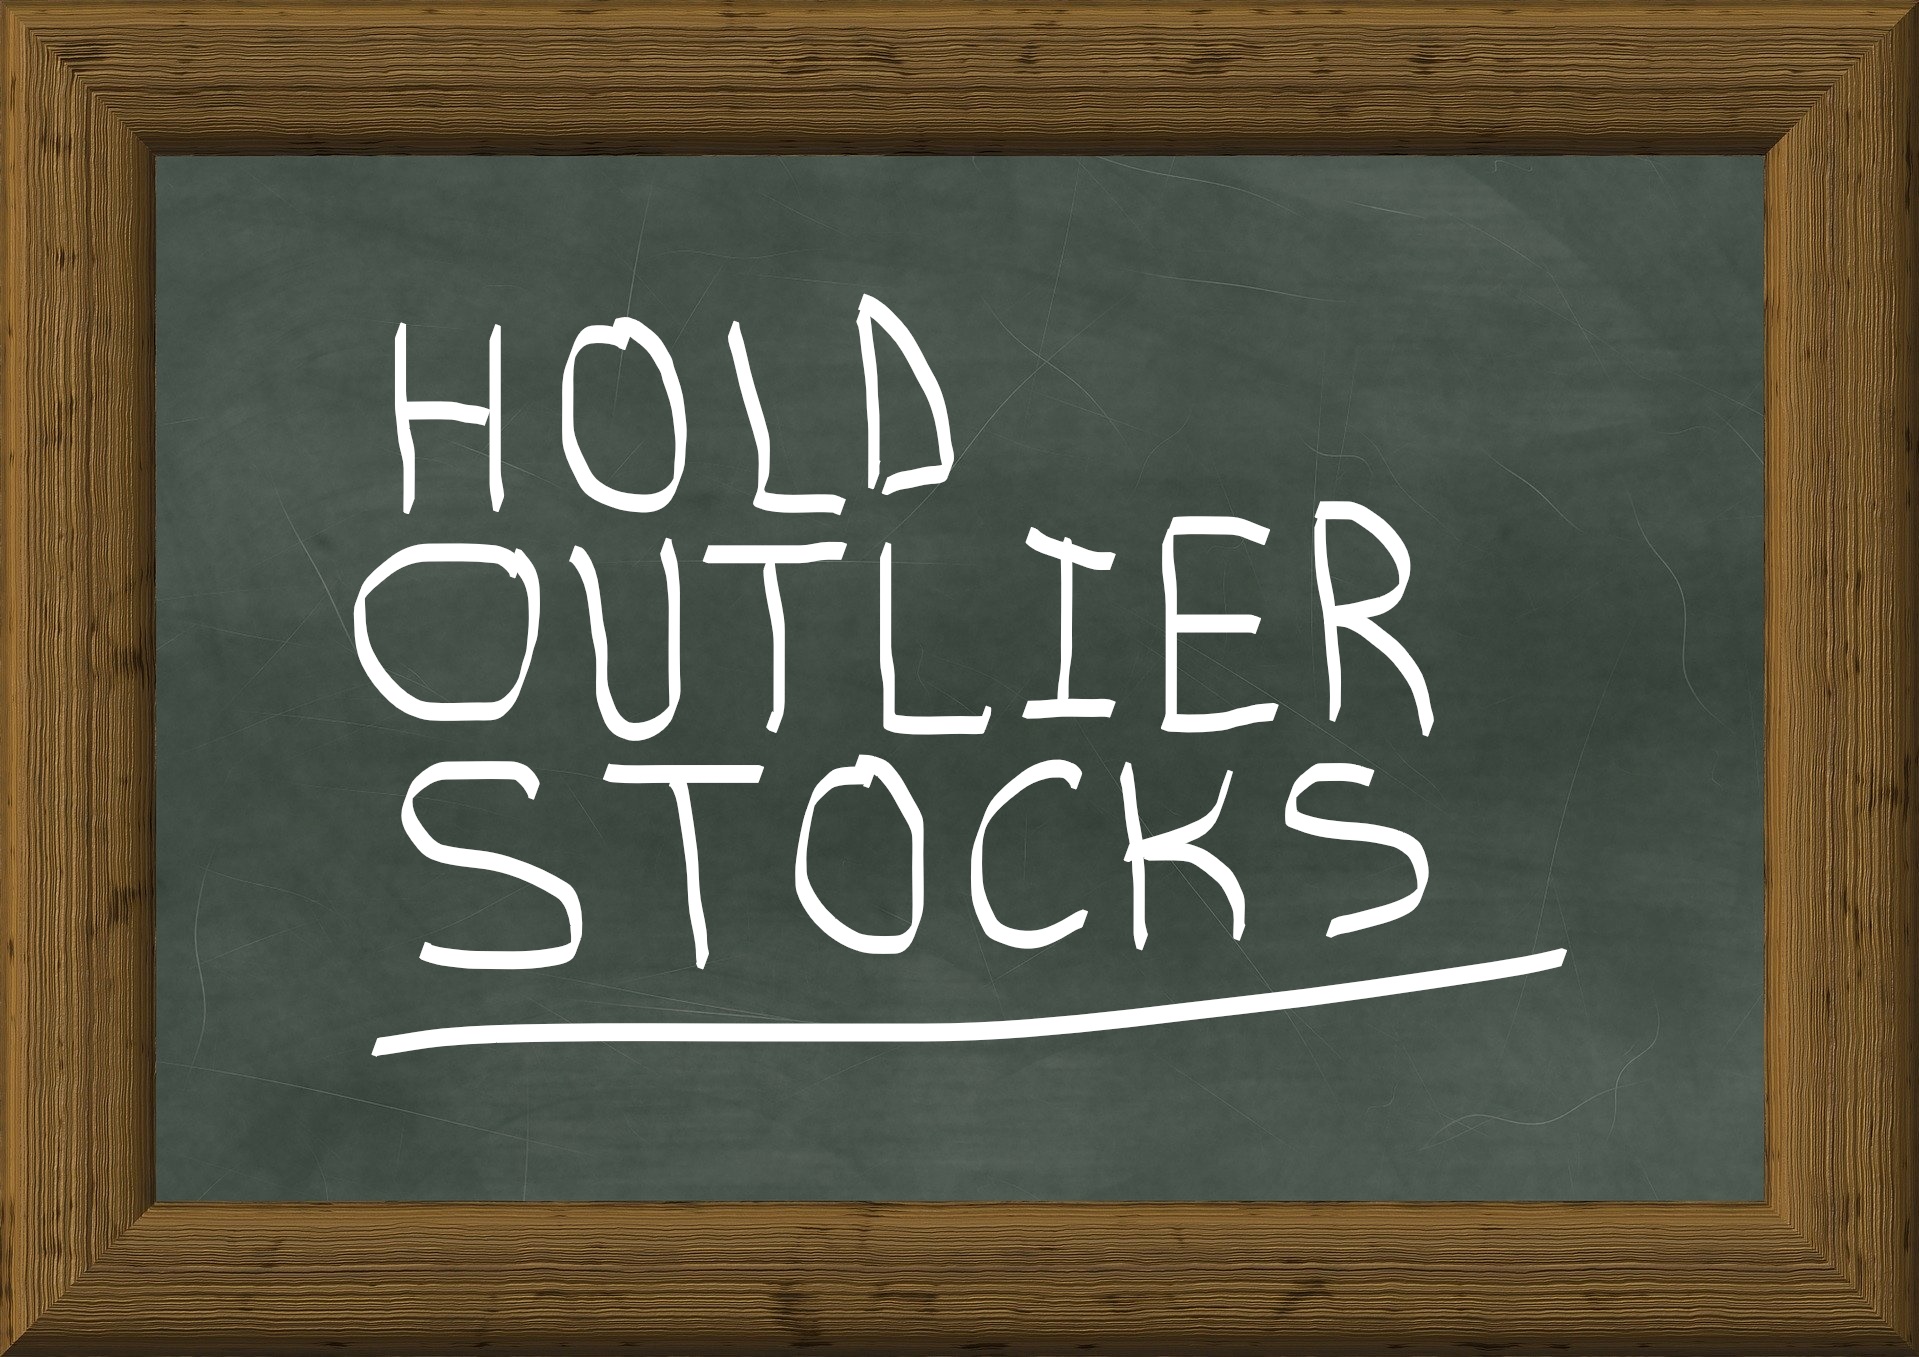 hold outlier stocks